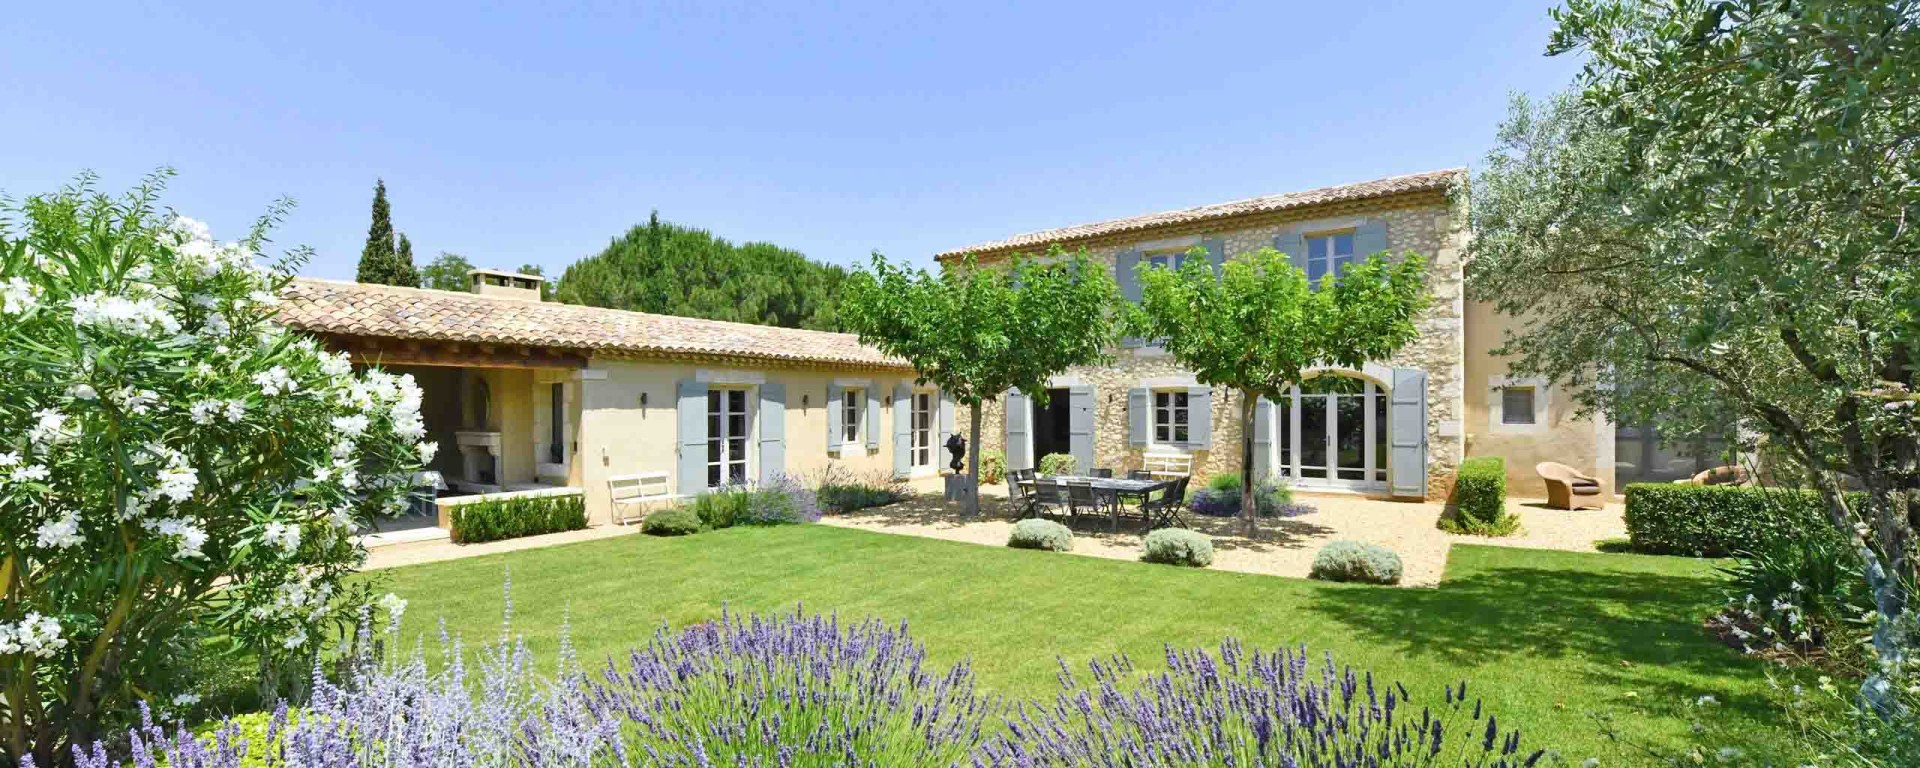 Villa in der Provence mieten - Le Beaux Jardin